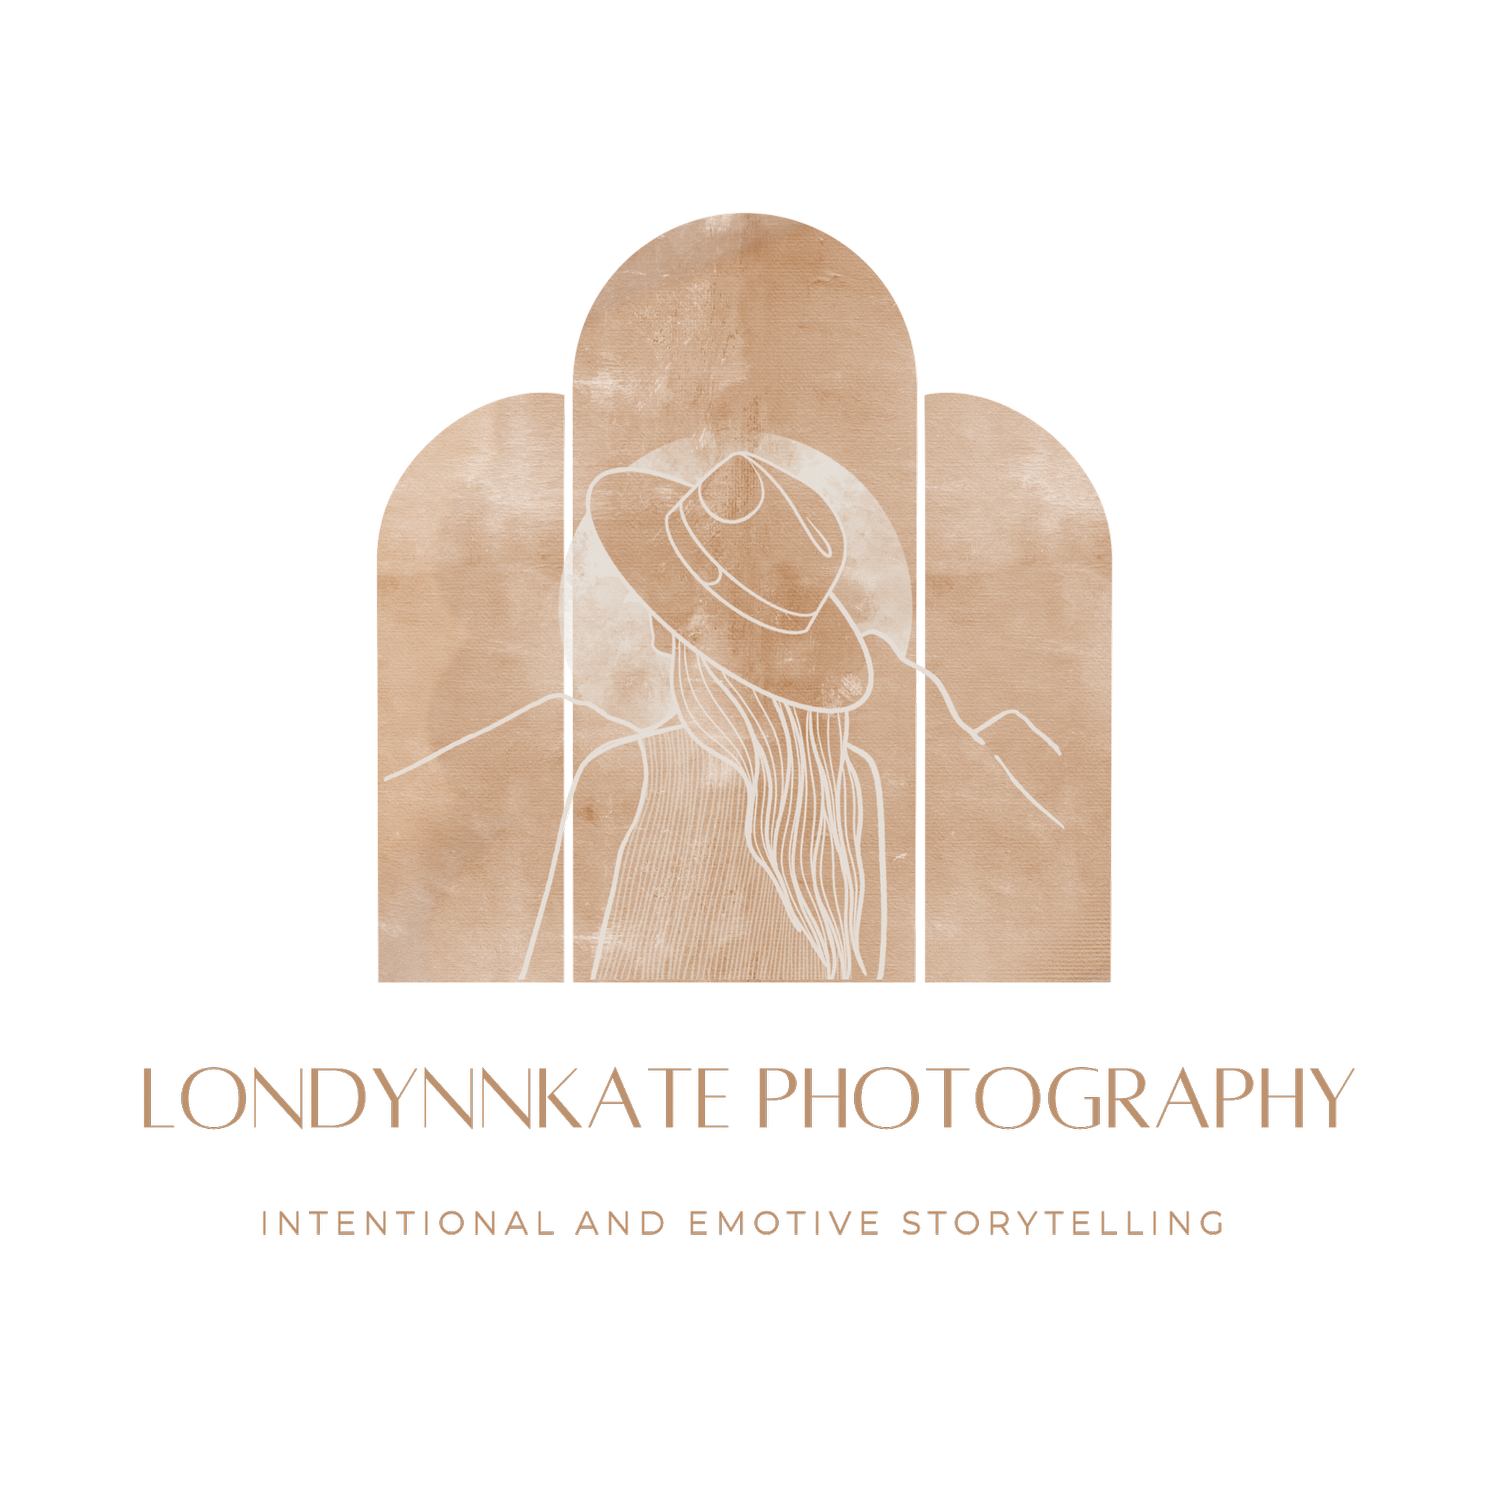 LondynnKate Photography